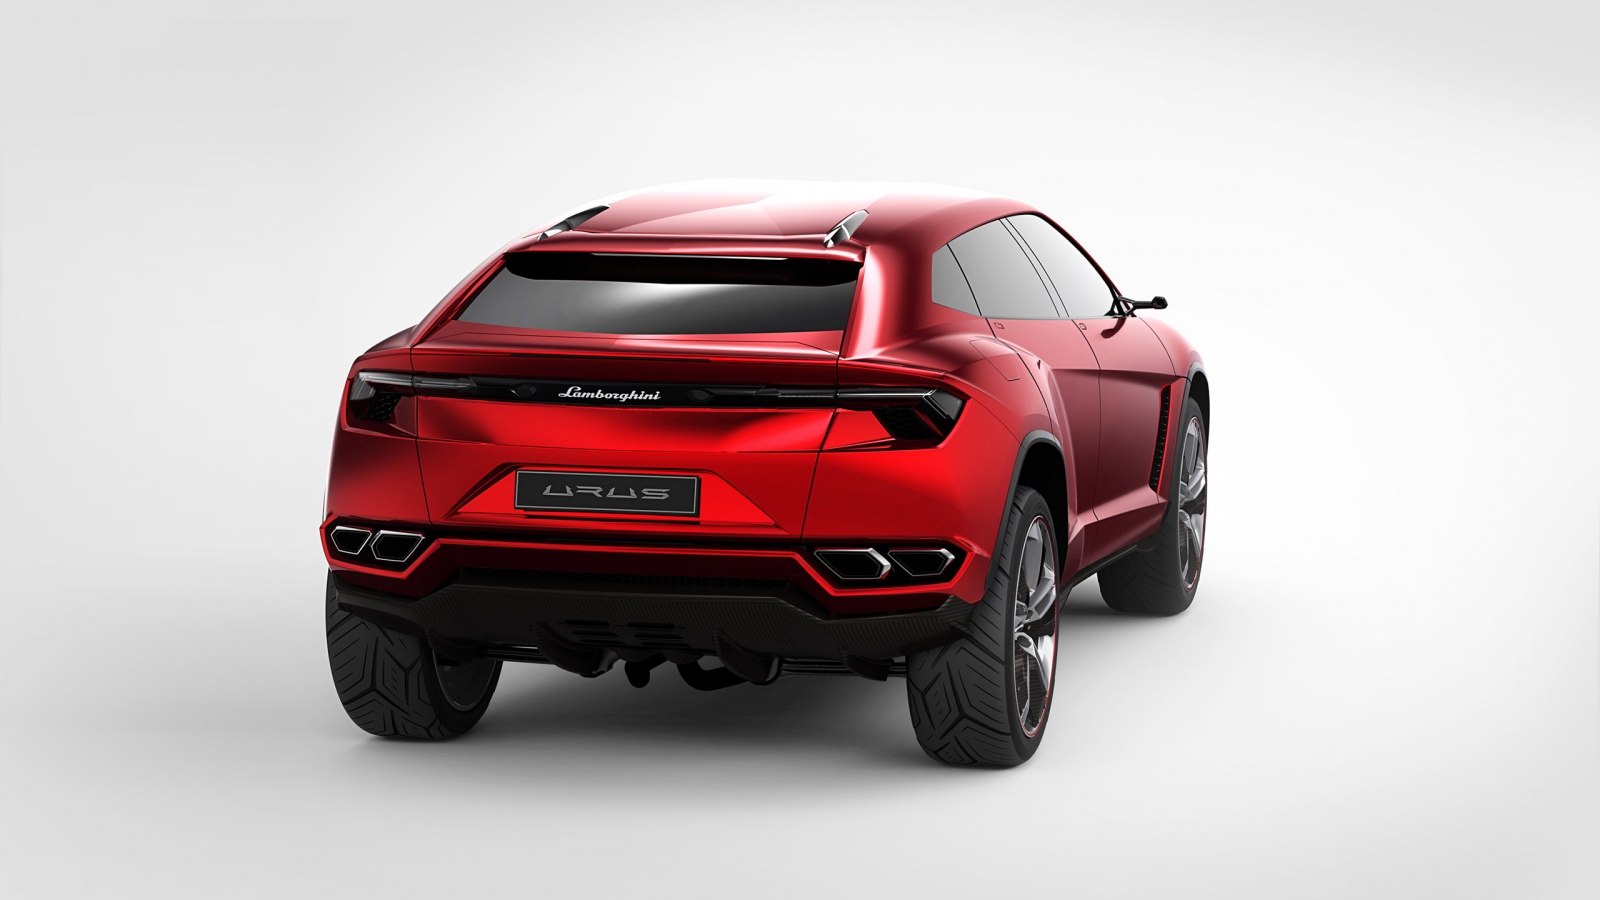 Lamborghini Urus Concept Rear Studio for 1600 x 900 HDTV resolution